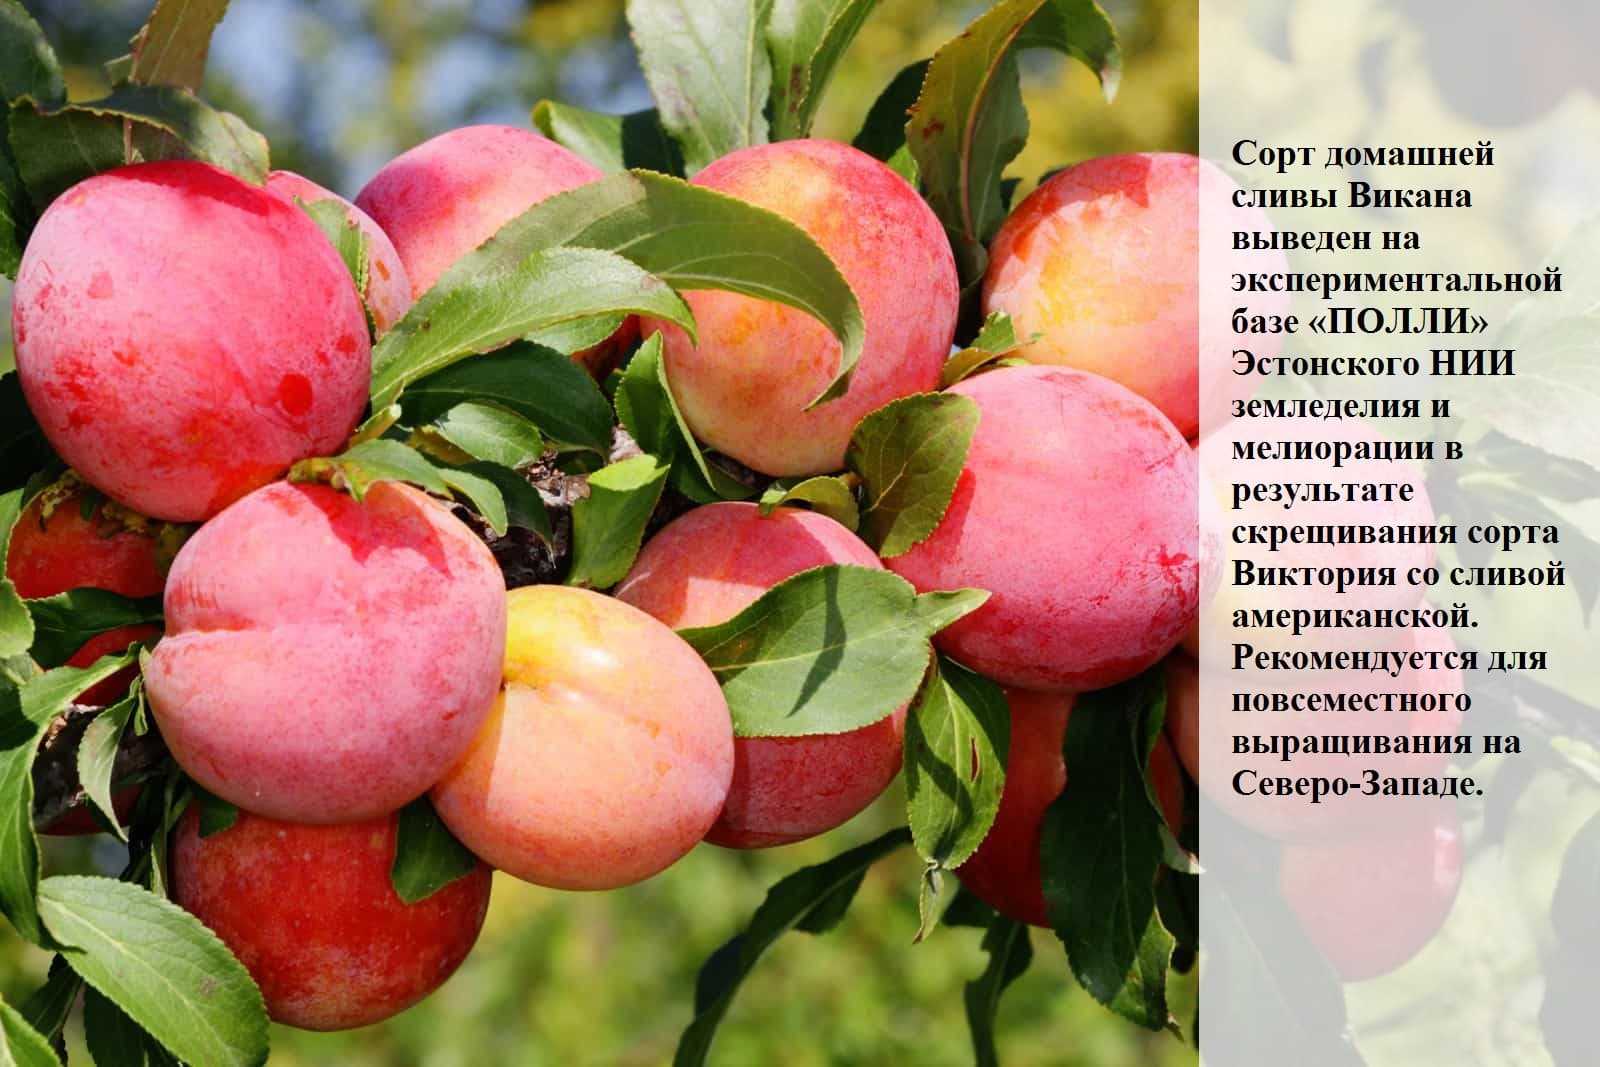 Американския яблоня деличия: описание сорта, фото, отзывы и характеристики